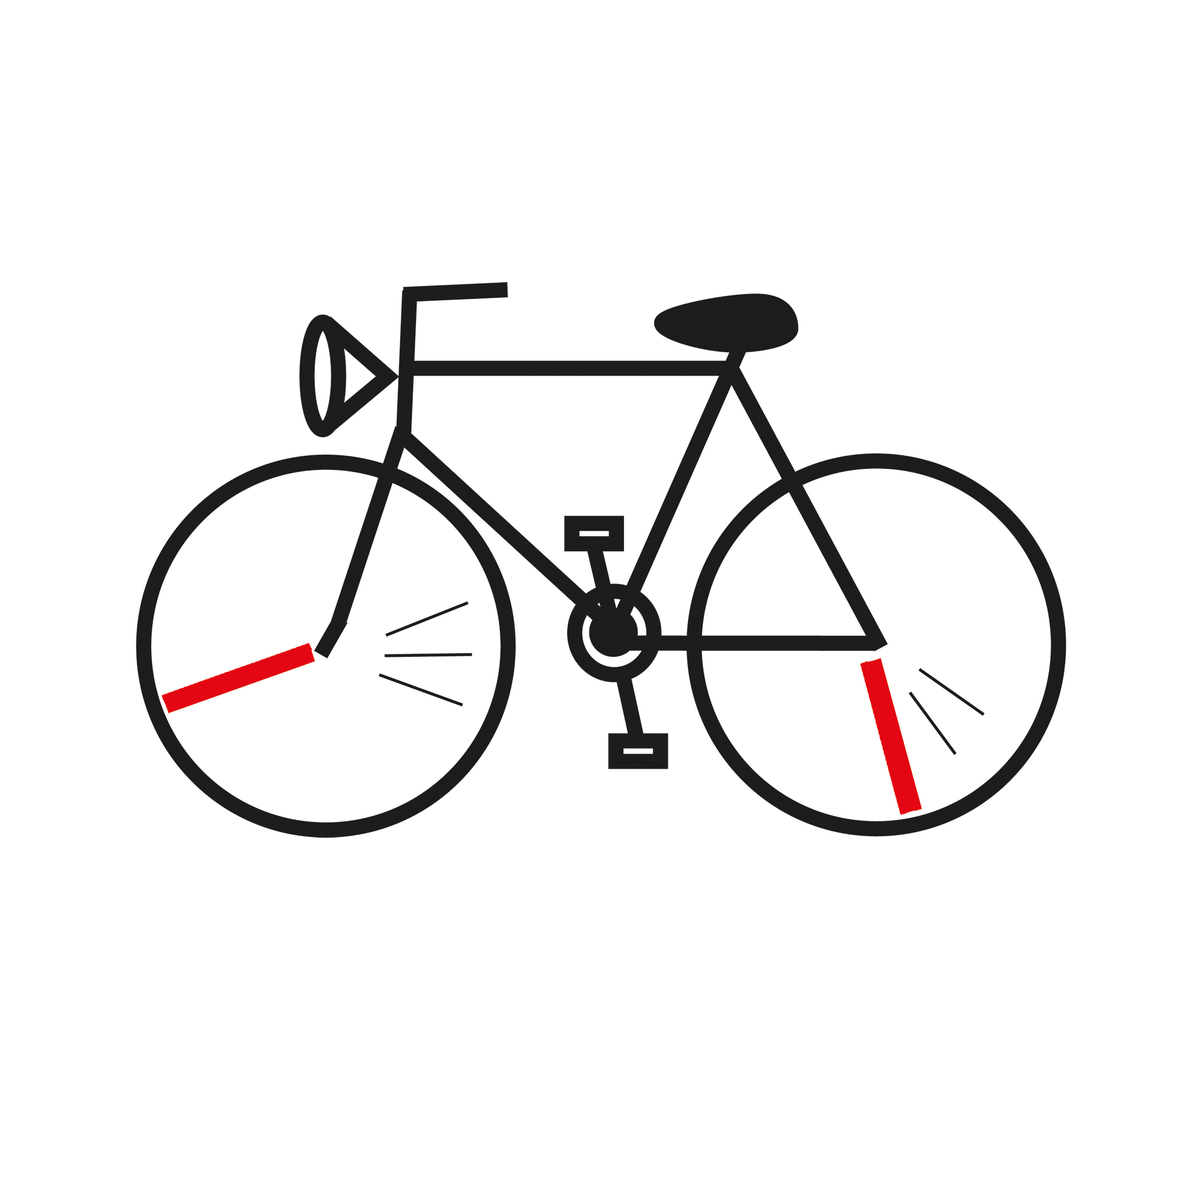 Brieföffner aus einer Fahrradspeiche